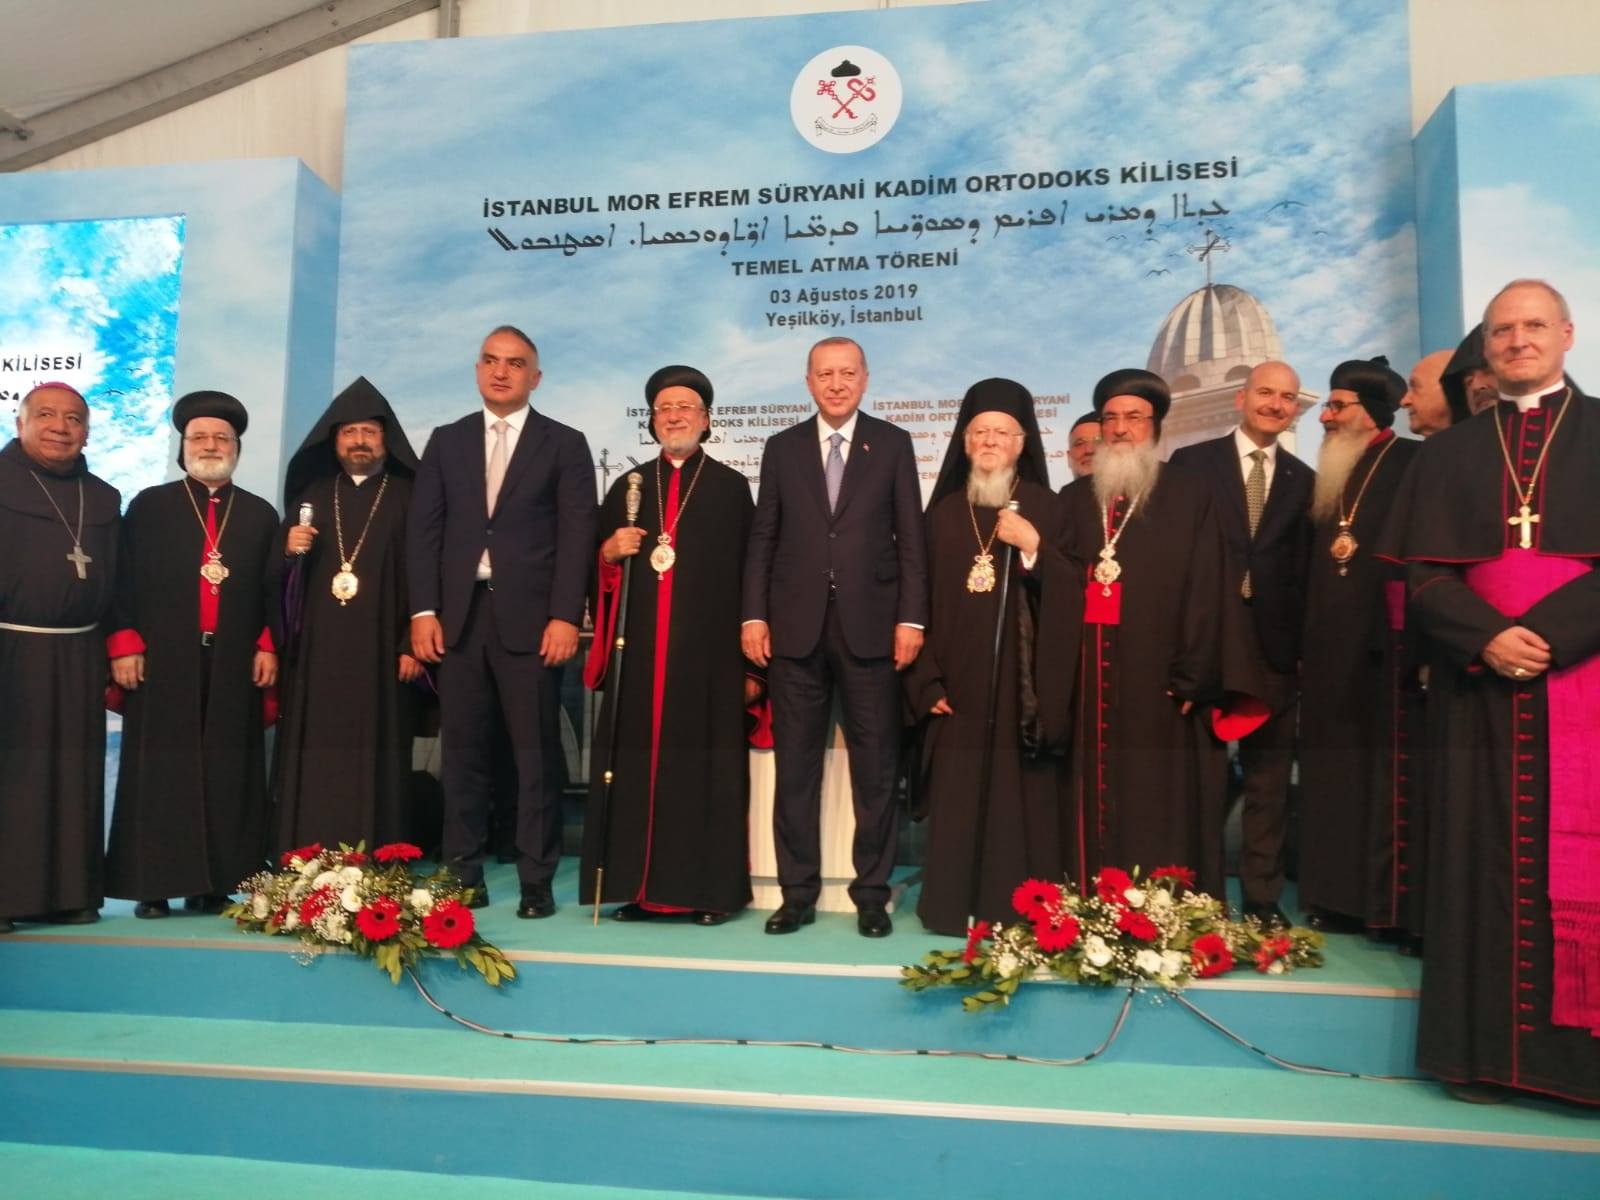 Erdoğan Süryani kilisesi açılışında Değabah Maşalyan ile görüştü